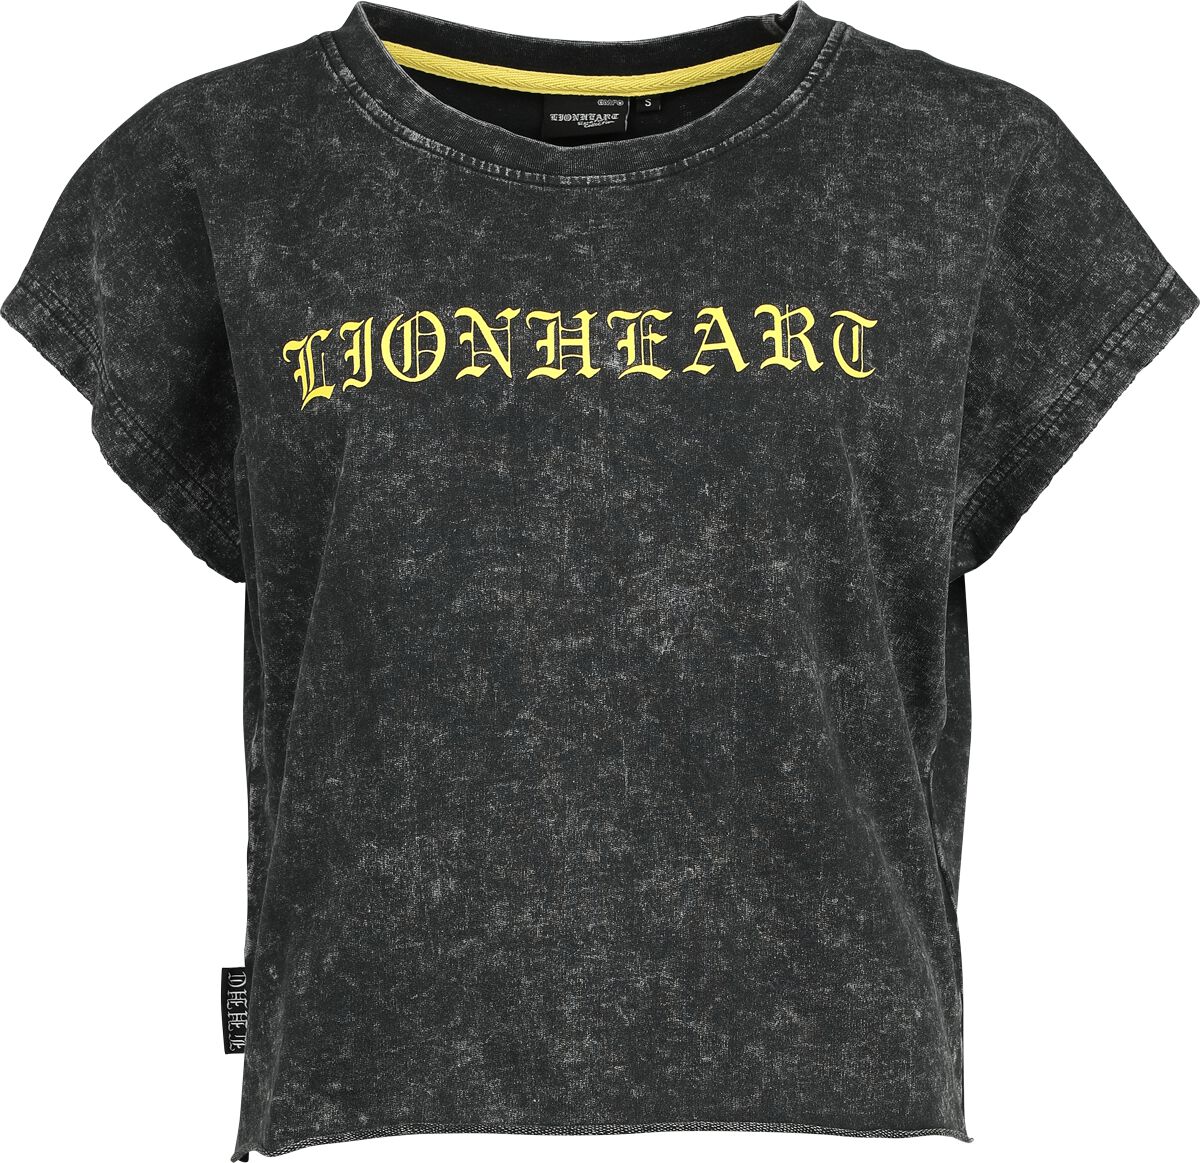 Lionheart T-Shirt - EMP Signature Collection - XS bis 3XL - für Damen - Größe XL - grau  - EMP exklusives Merchandise!